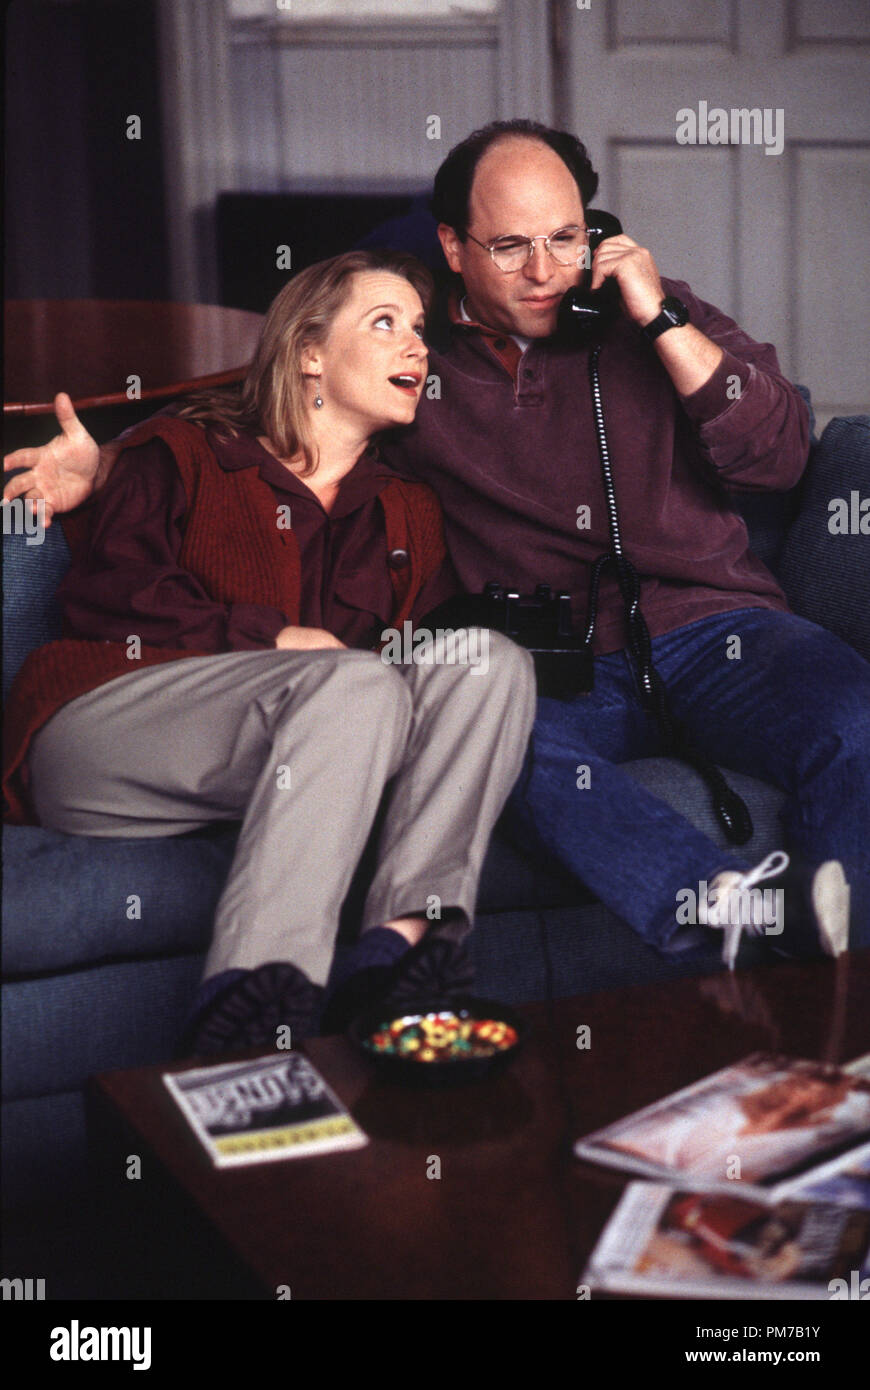 Photo du film de 'Seinfeld' Heidi Swedberg, Jason Alexander 1995 Crédit photo : Gary Null Référence de fichier #  31043126THA pour un usage éditorial uniquement - Tous droits réservés Banque D'Images